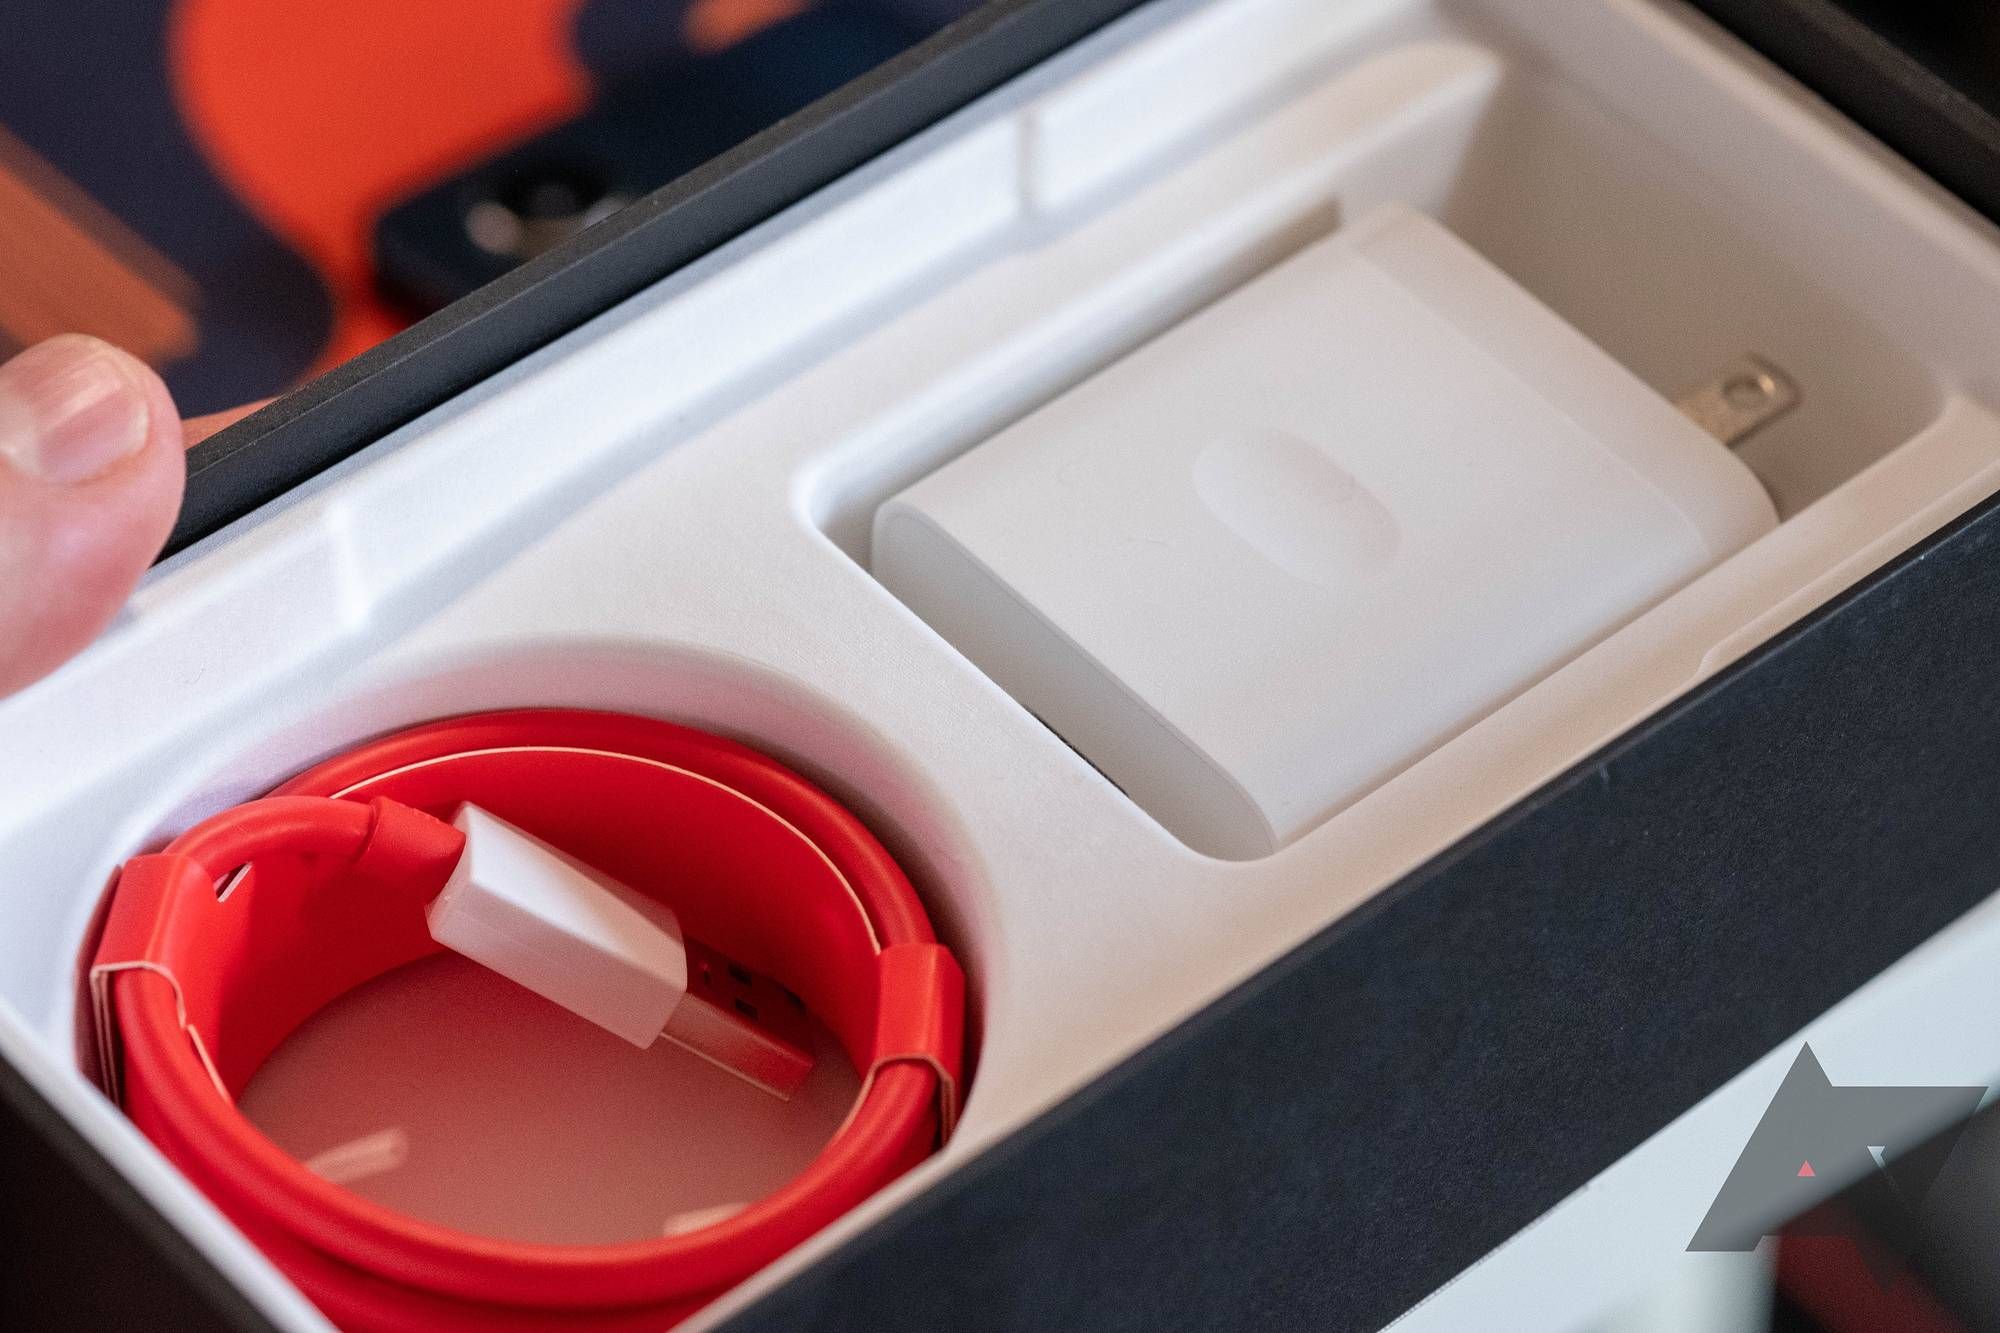 Uma caixa de telefone OnePlus com carregador dentro.